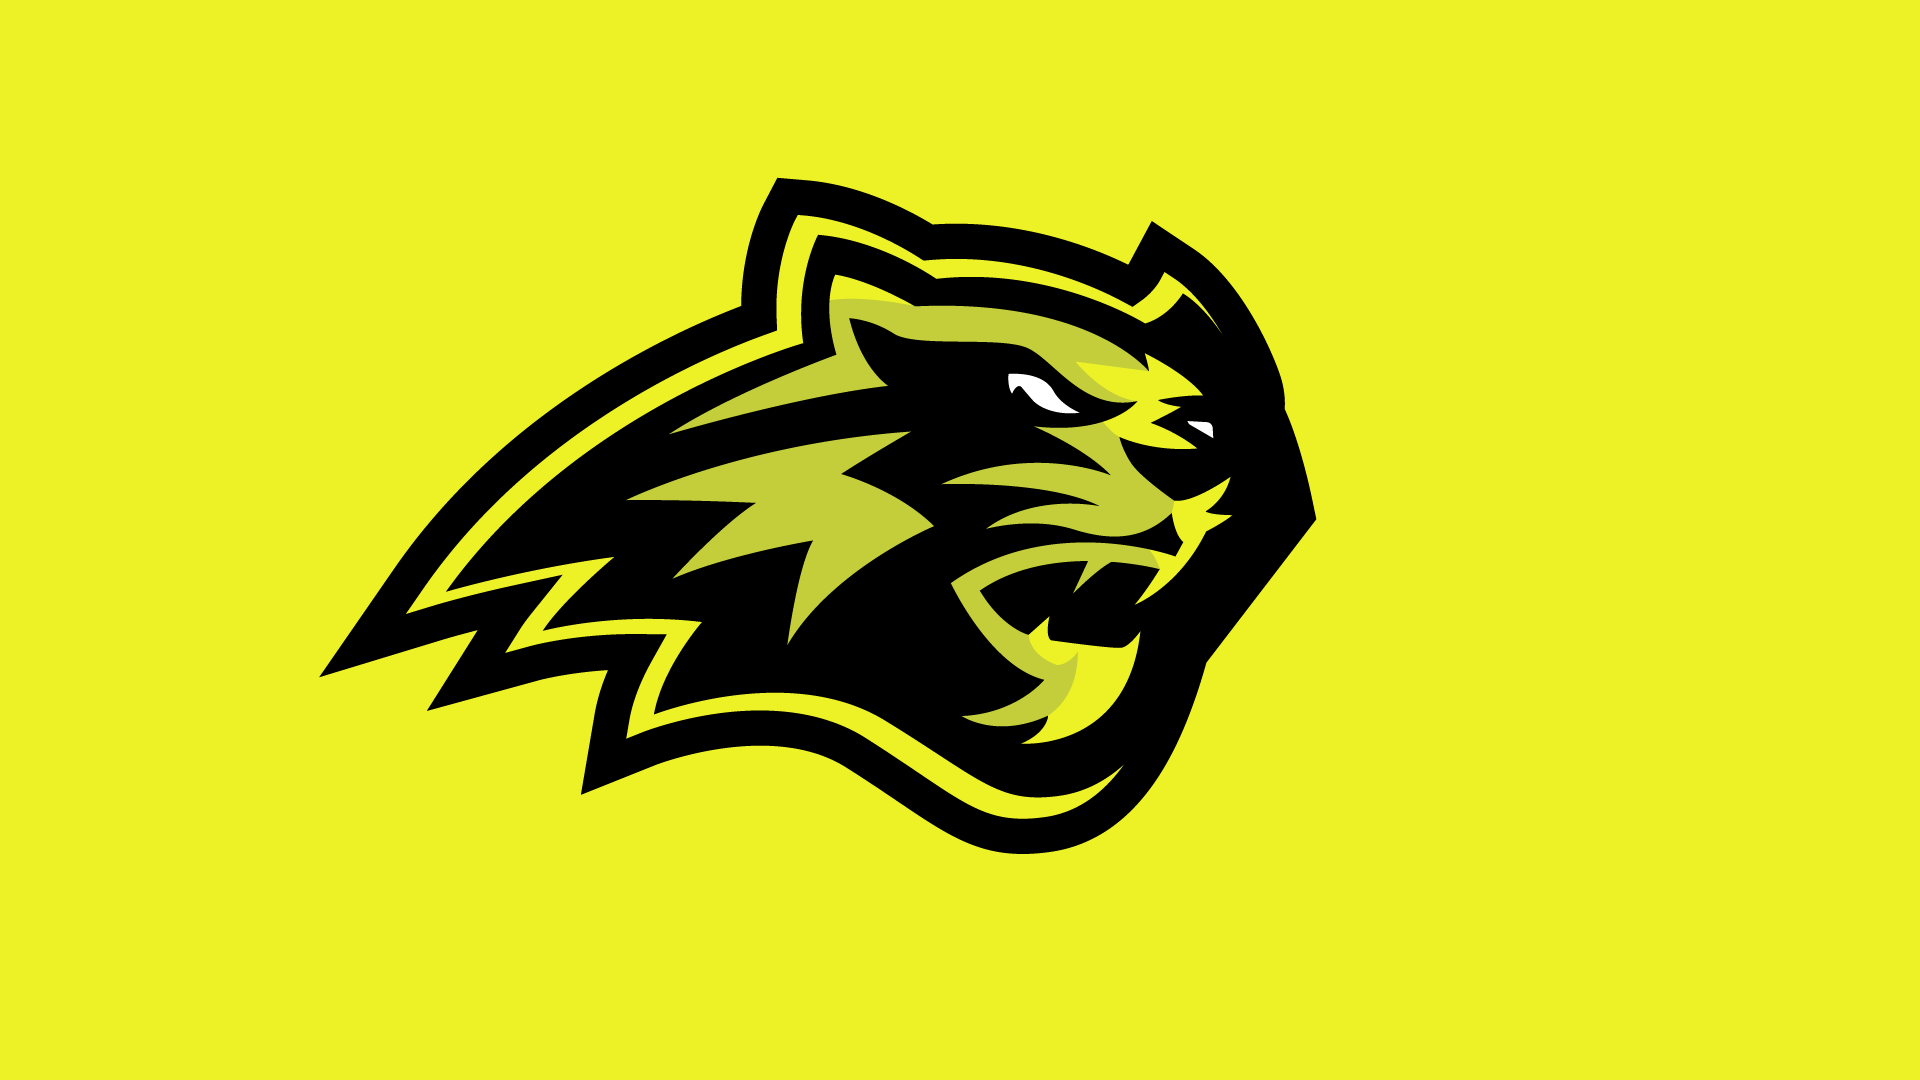 Panther esports logo